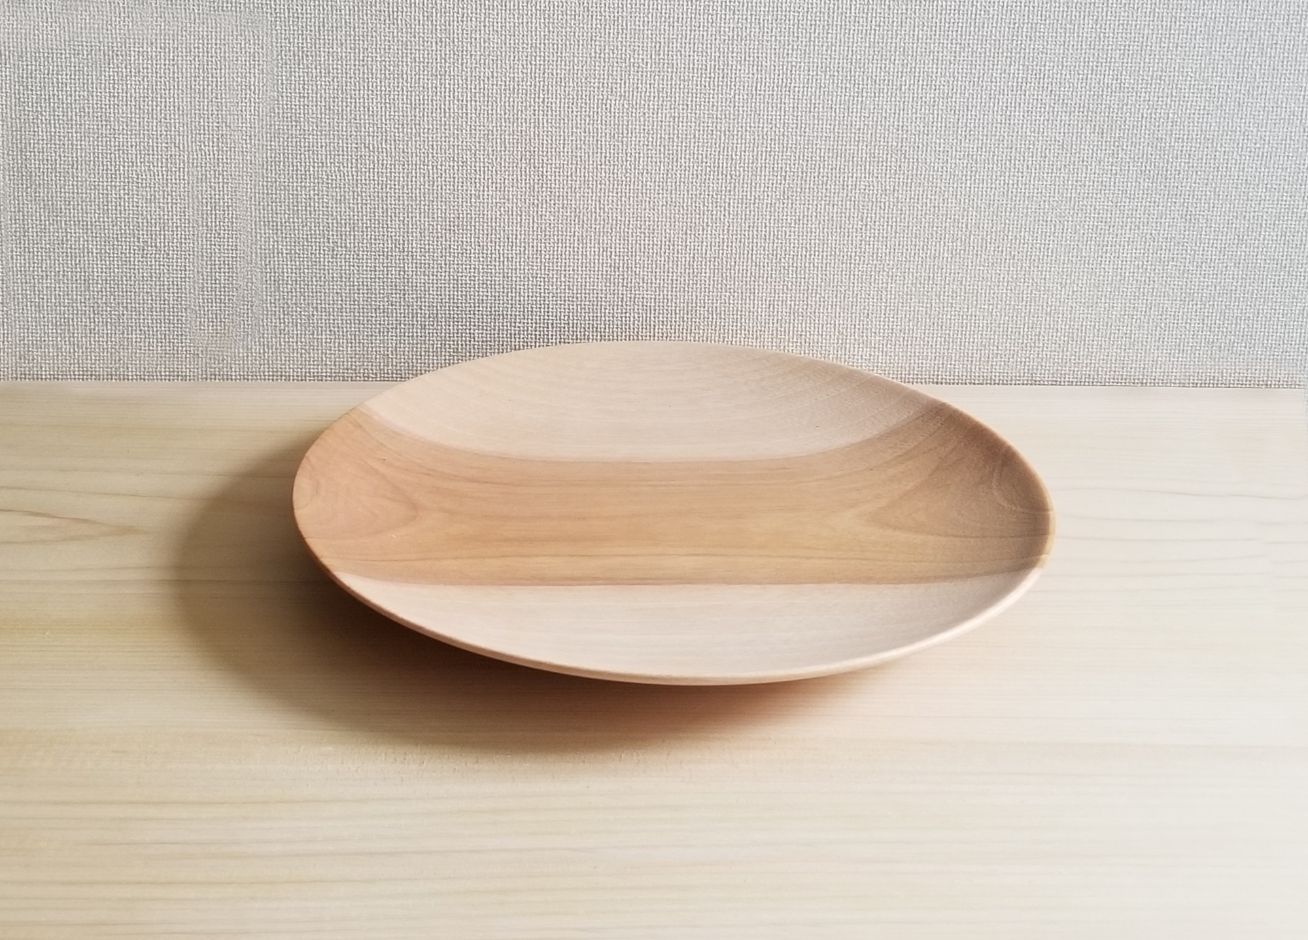 大胆な形状を繊細に挽き上げた器 [かのりゅう] Yama. 皿 -sara- / 器 木製 皿 オシャレ プレゼント ギフト